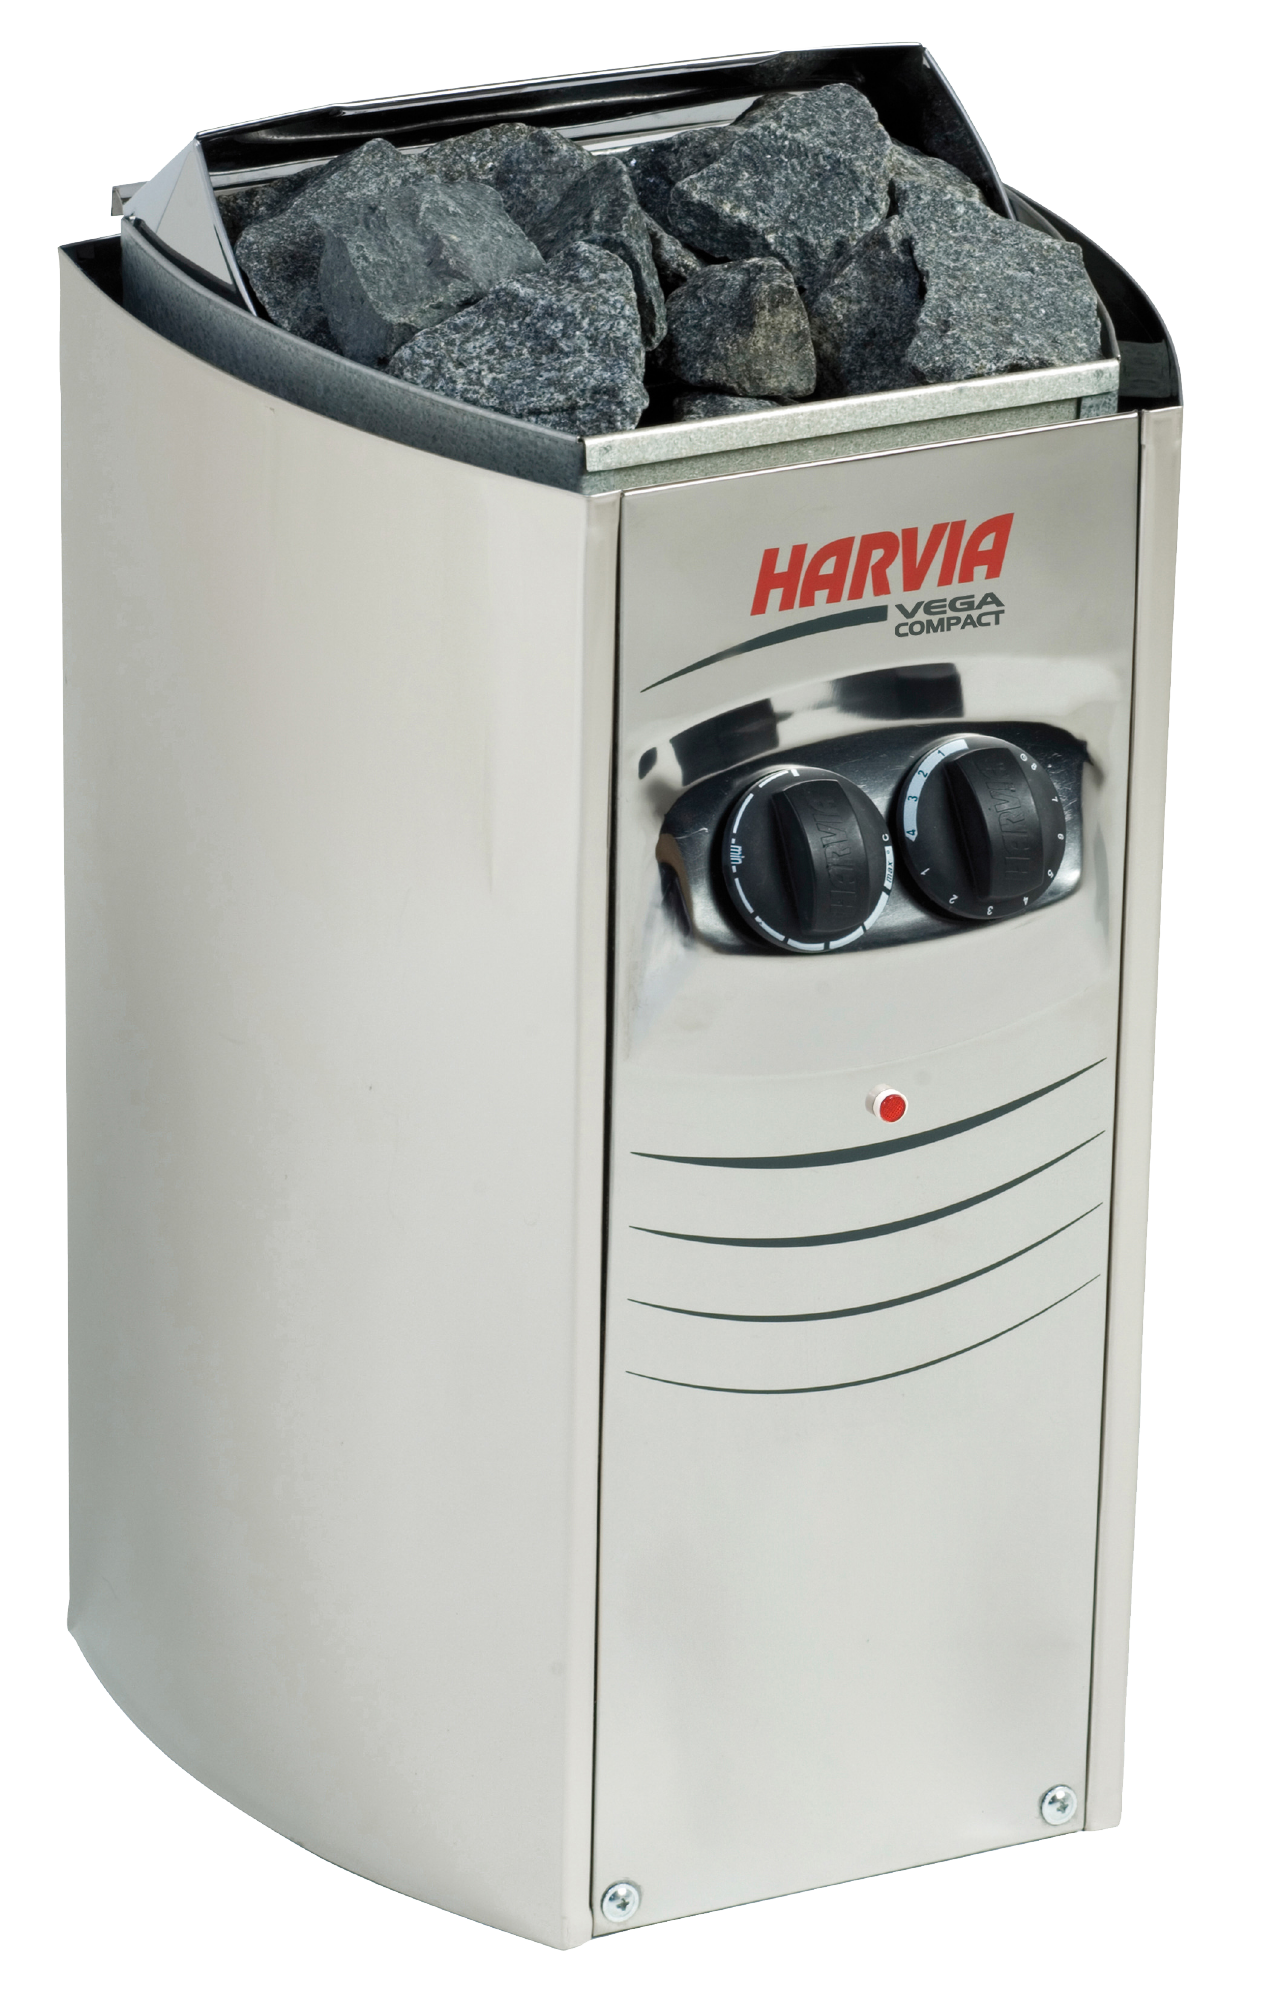 Harvia Vega Compact 1900 1